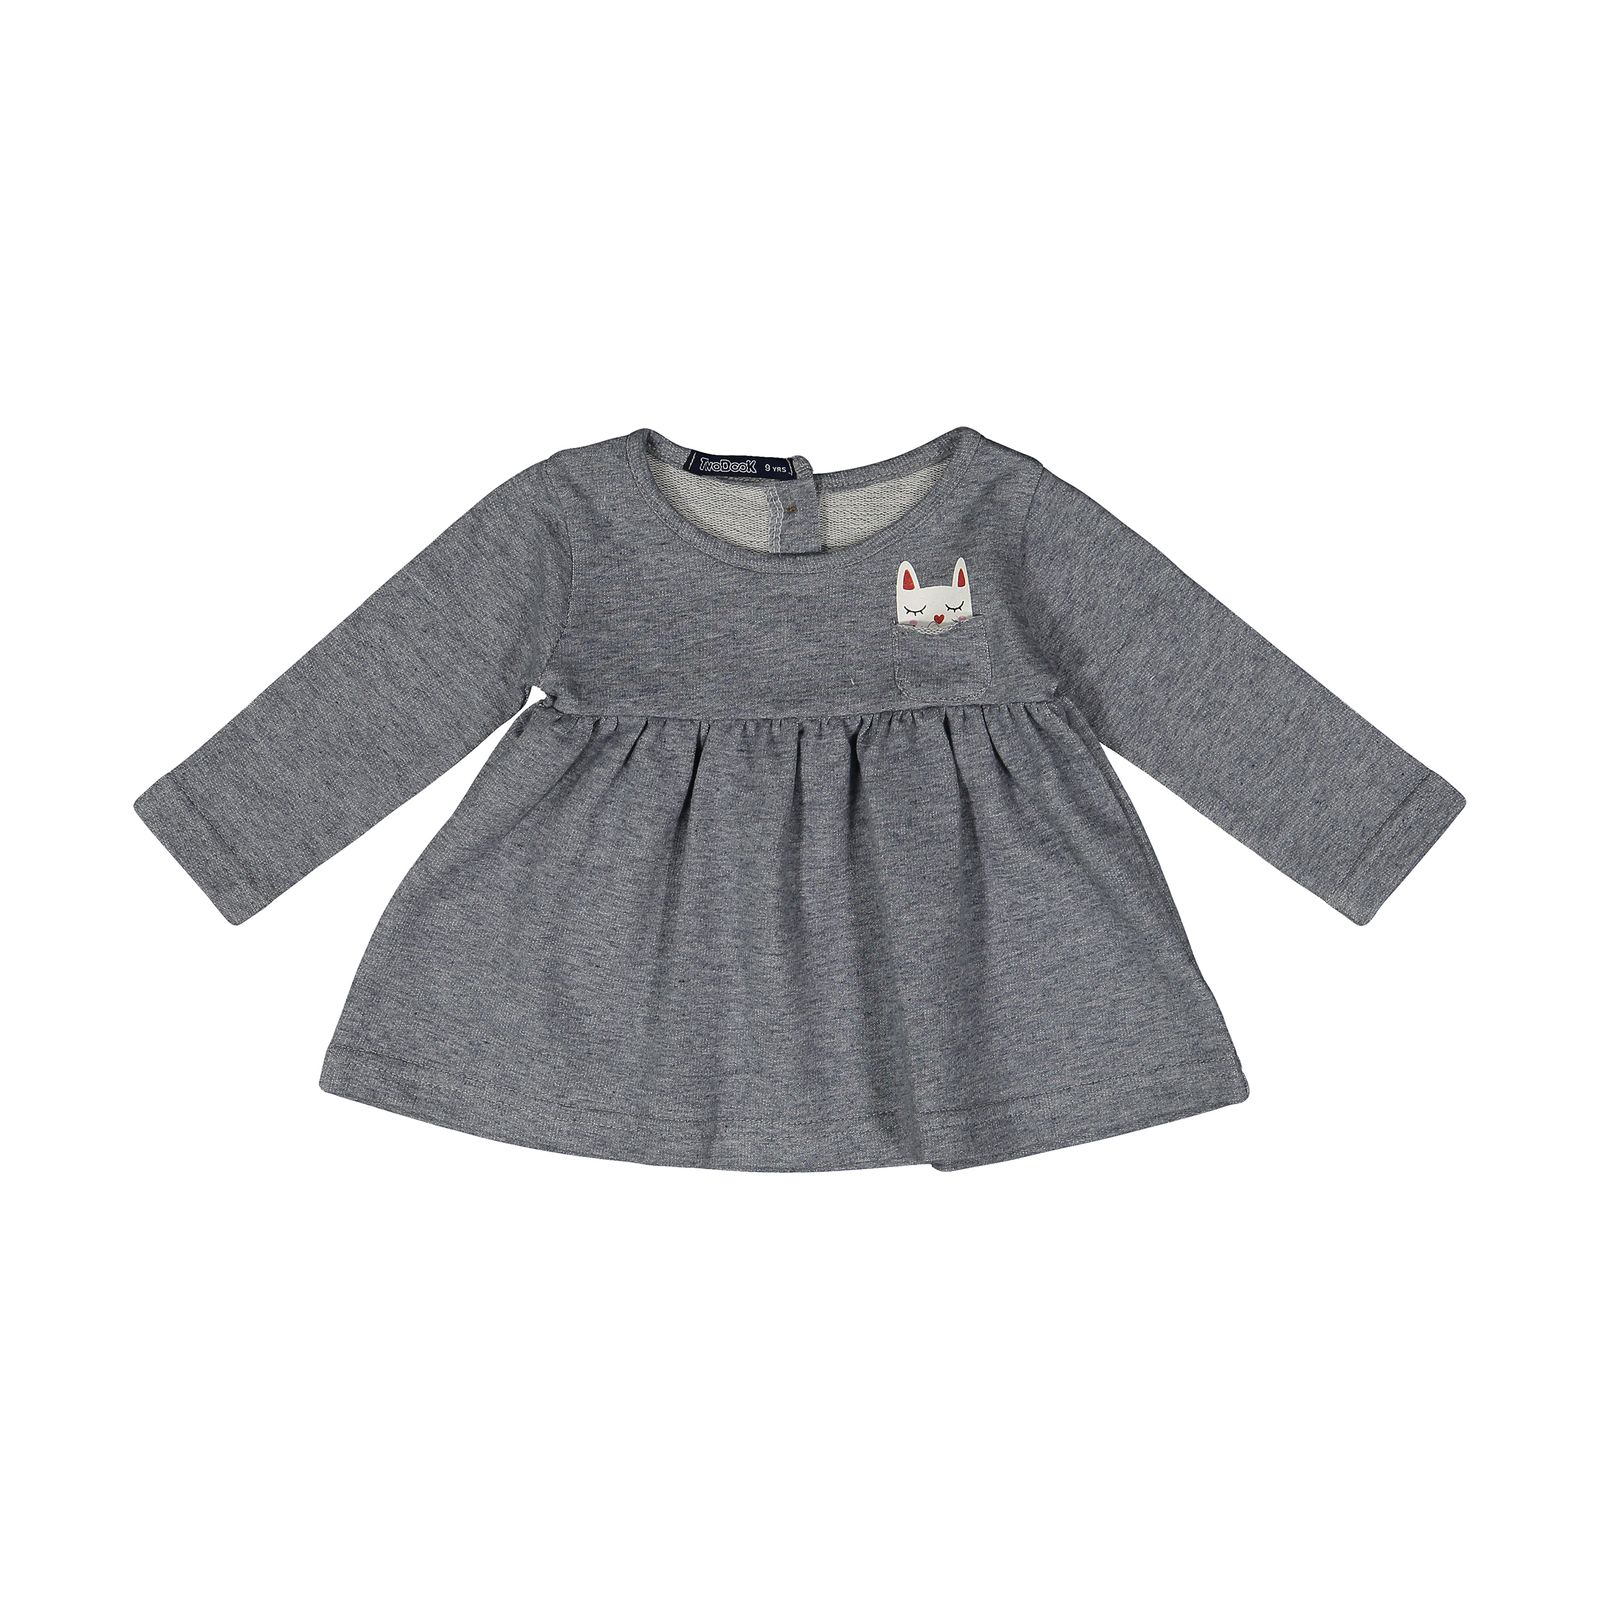 پیراهن نوزادی دخترانه تودوک مدل 2151189-90 -  - 1